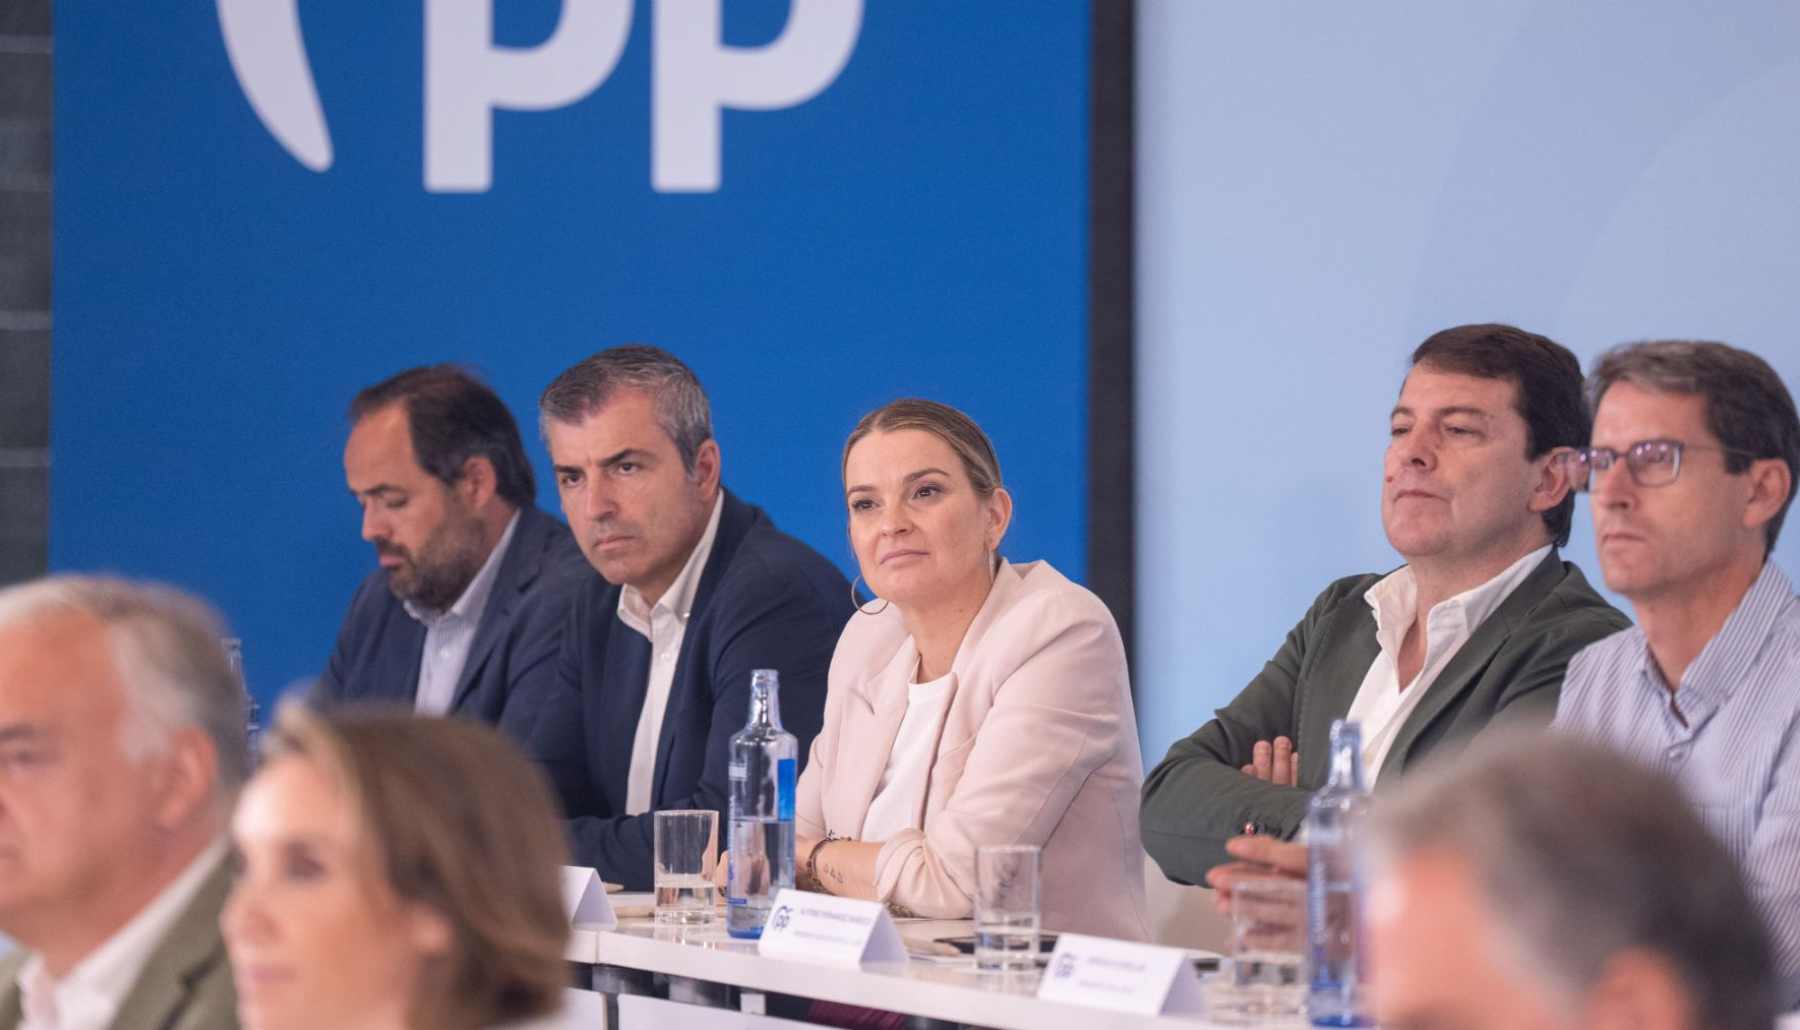 Marga Prohens durante la reunión de la Junta Directiva Nacional del PP.